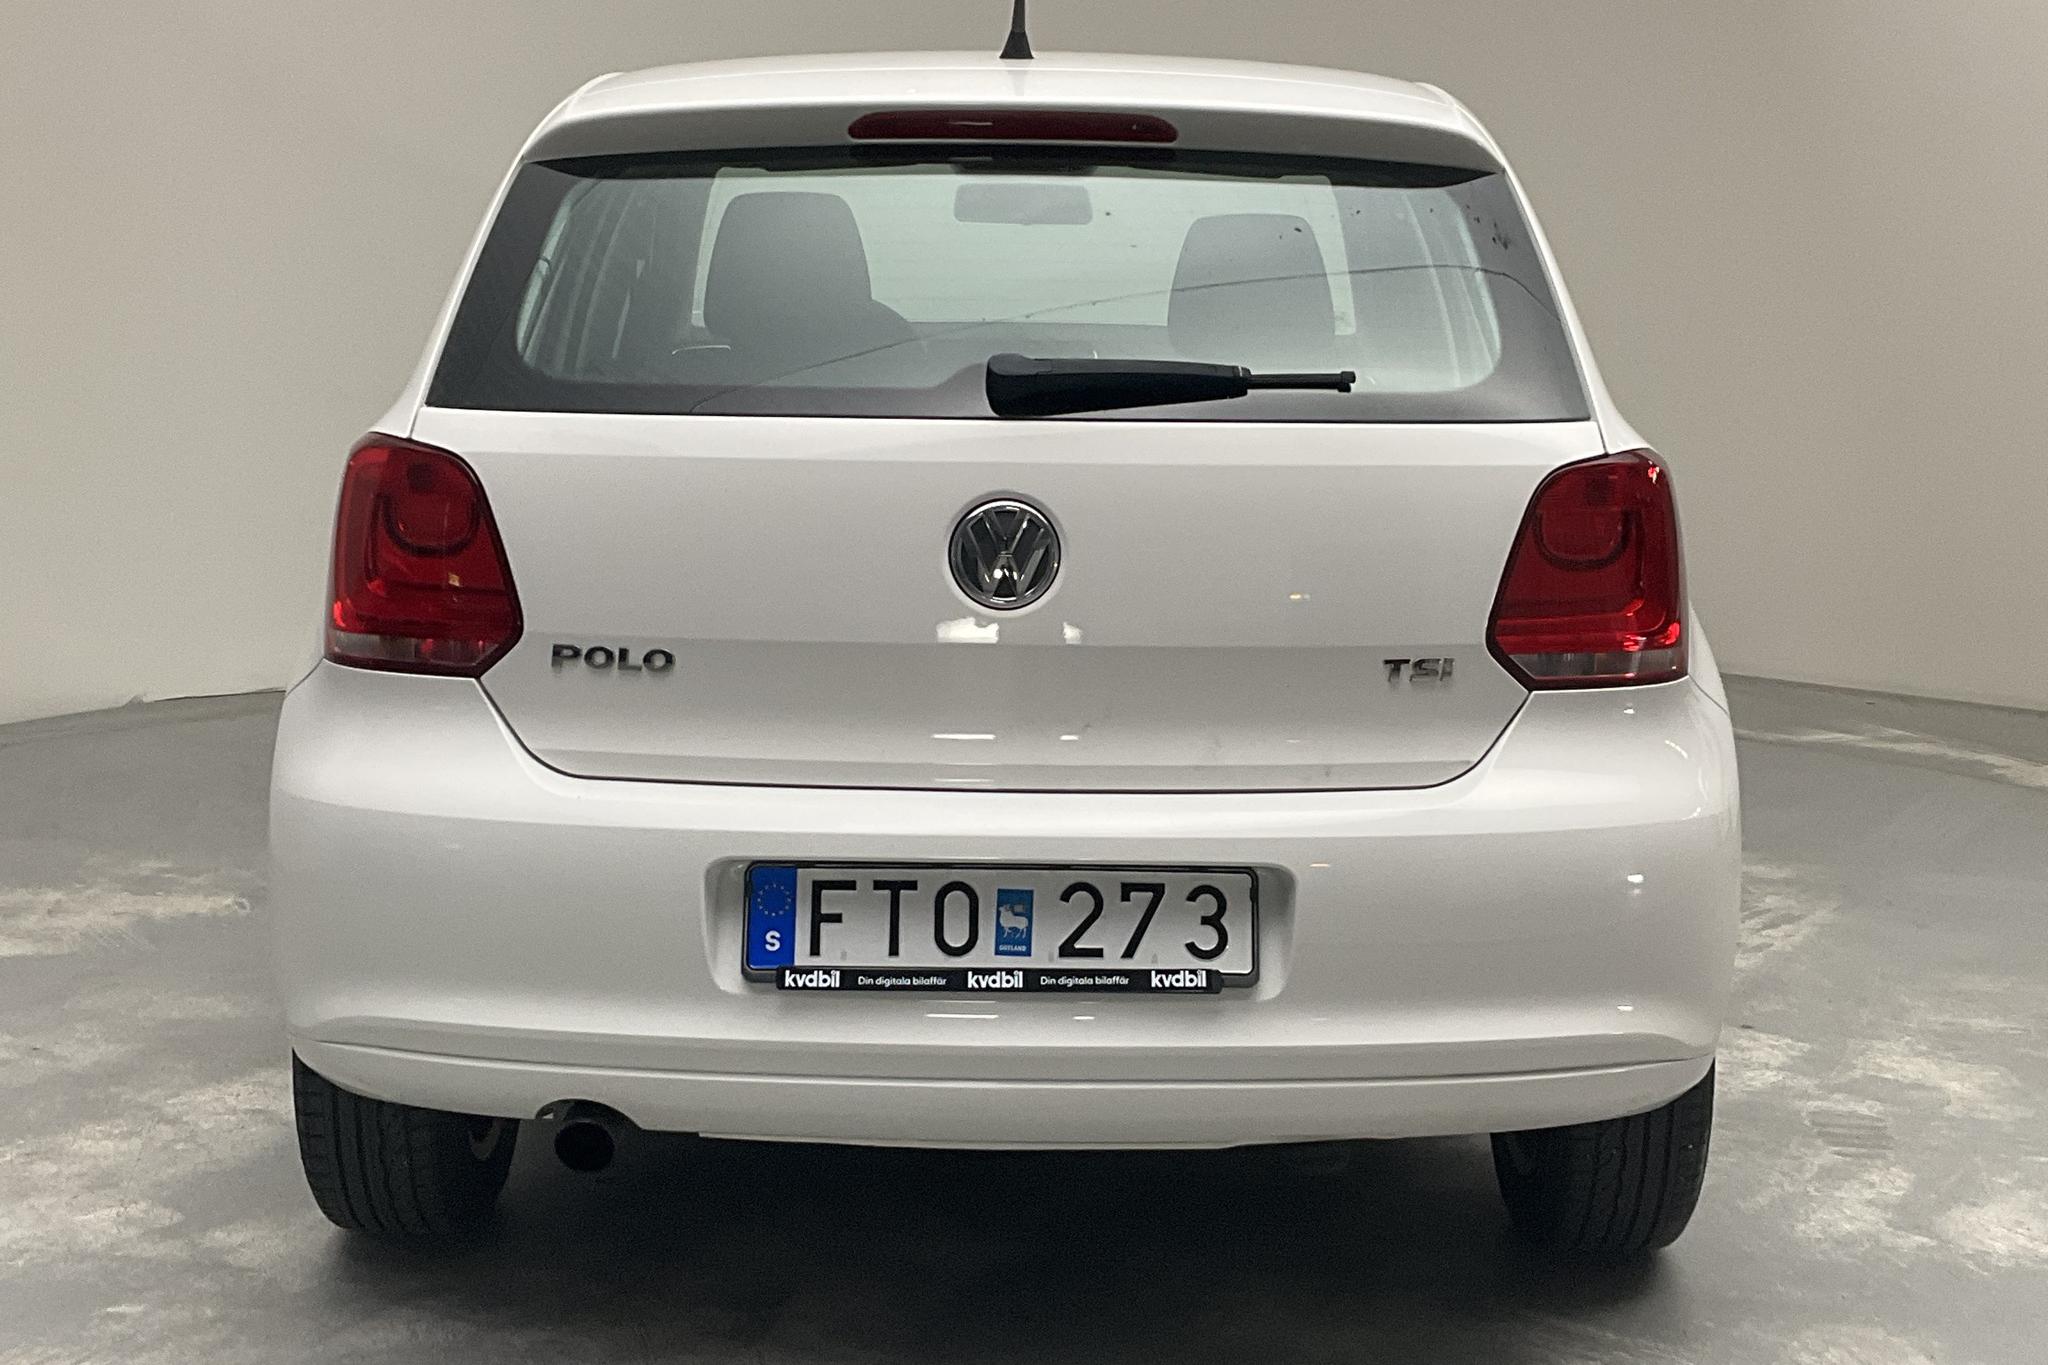 VW Polo 1.2 TSI 5dr (90hk) - 57 100 km - Manual - white - 2012